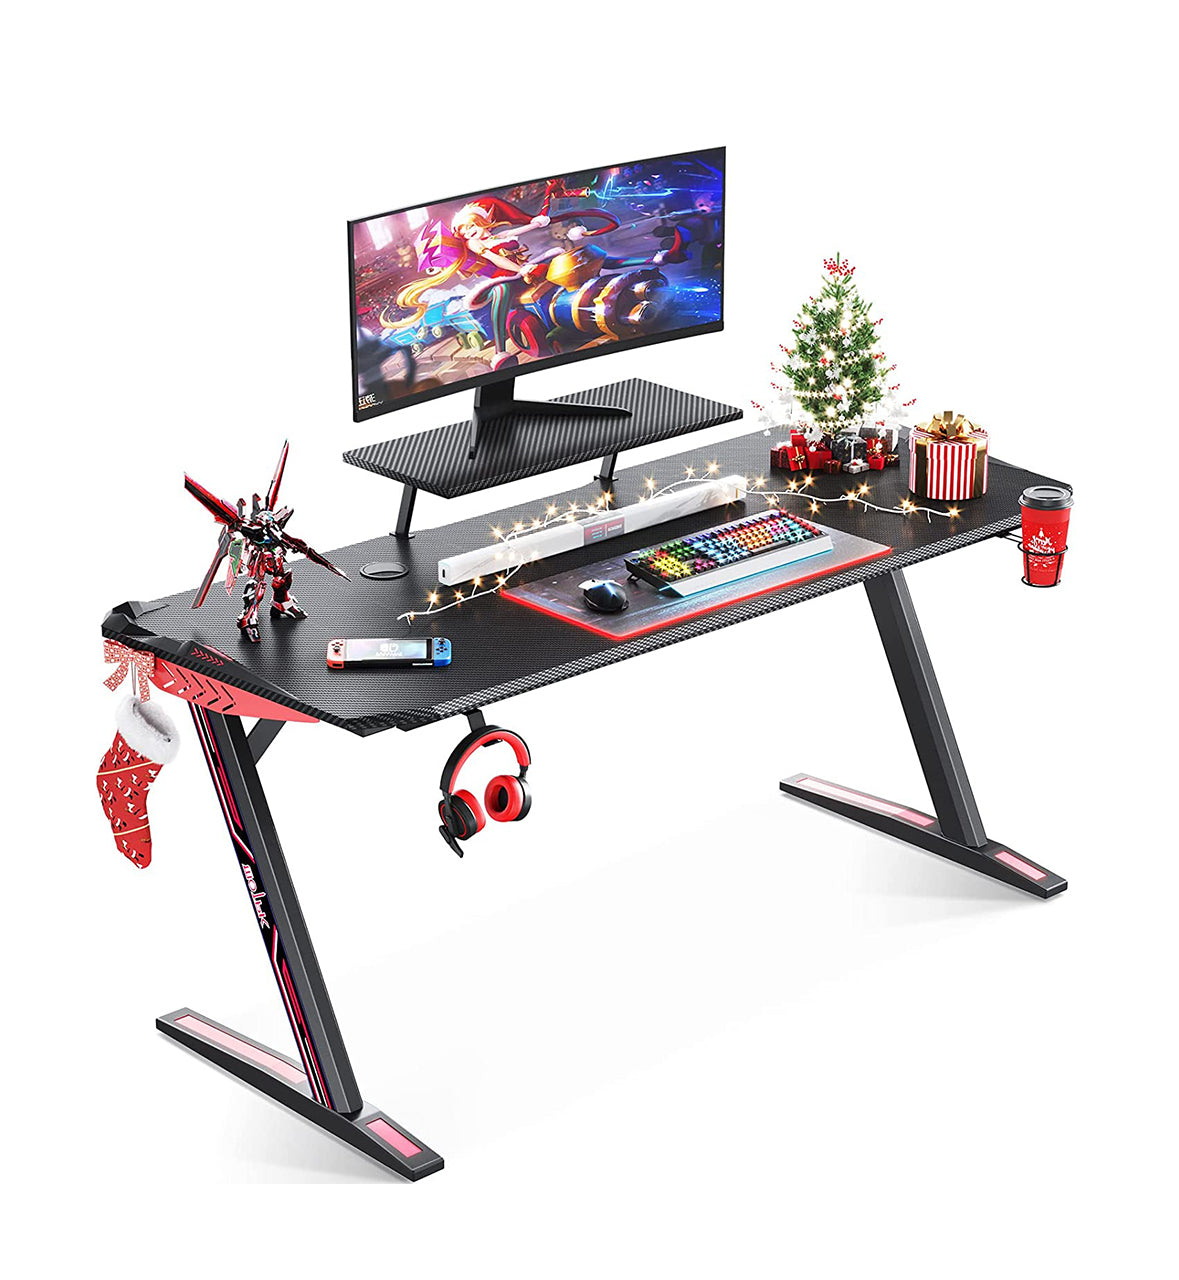 55" Gaming Desk Z-shaped Computer Desk